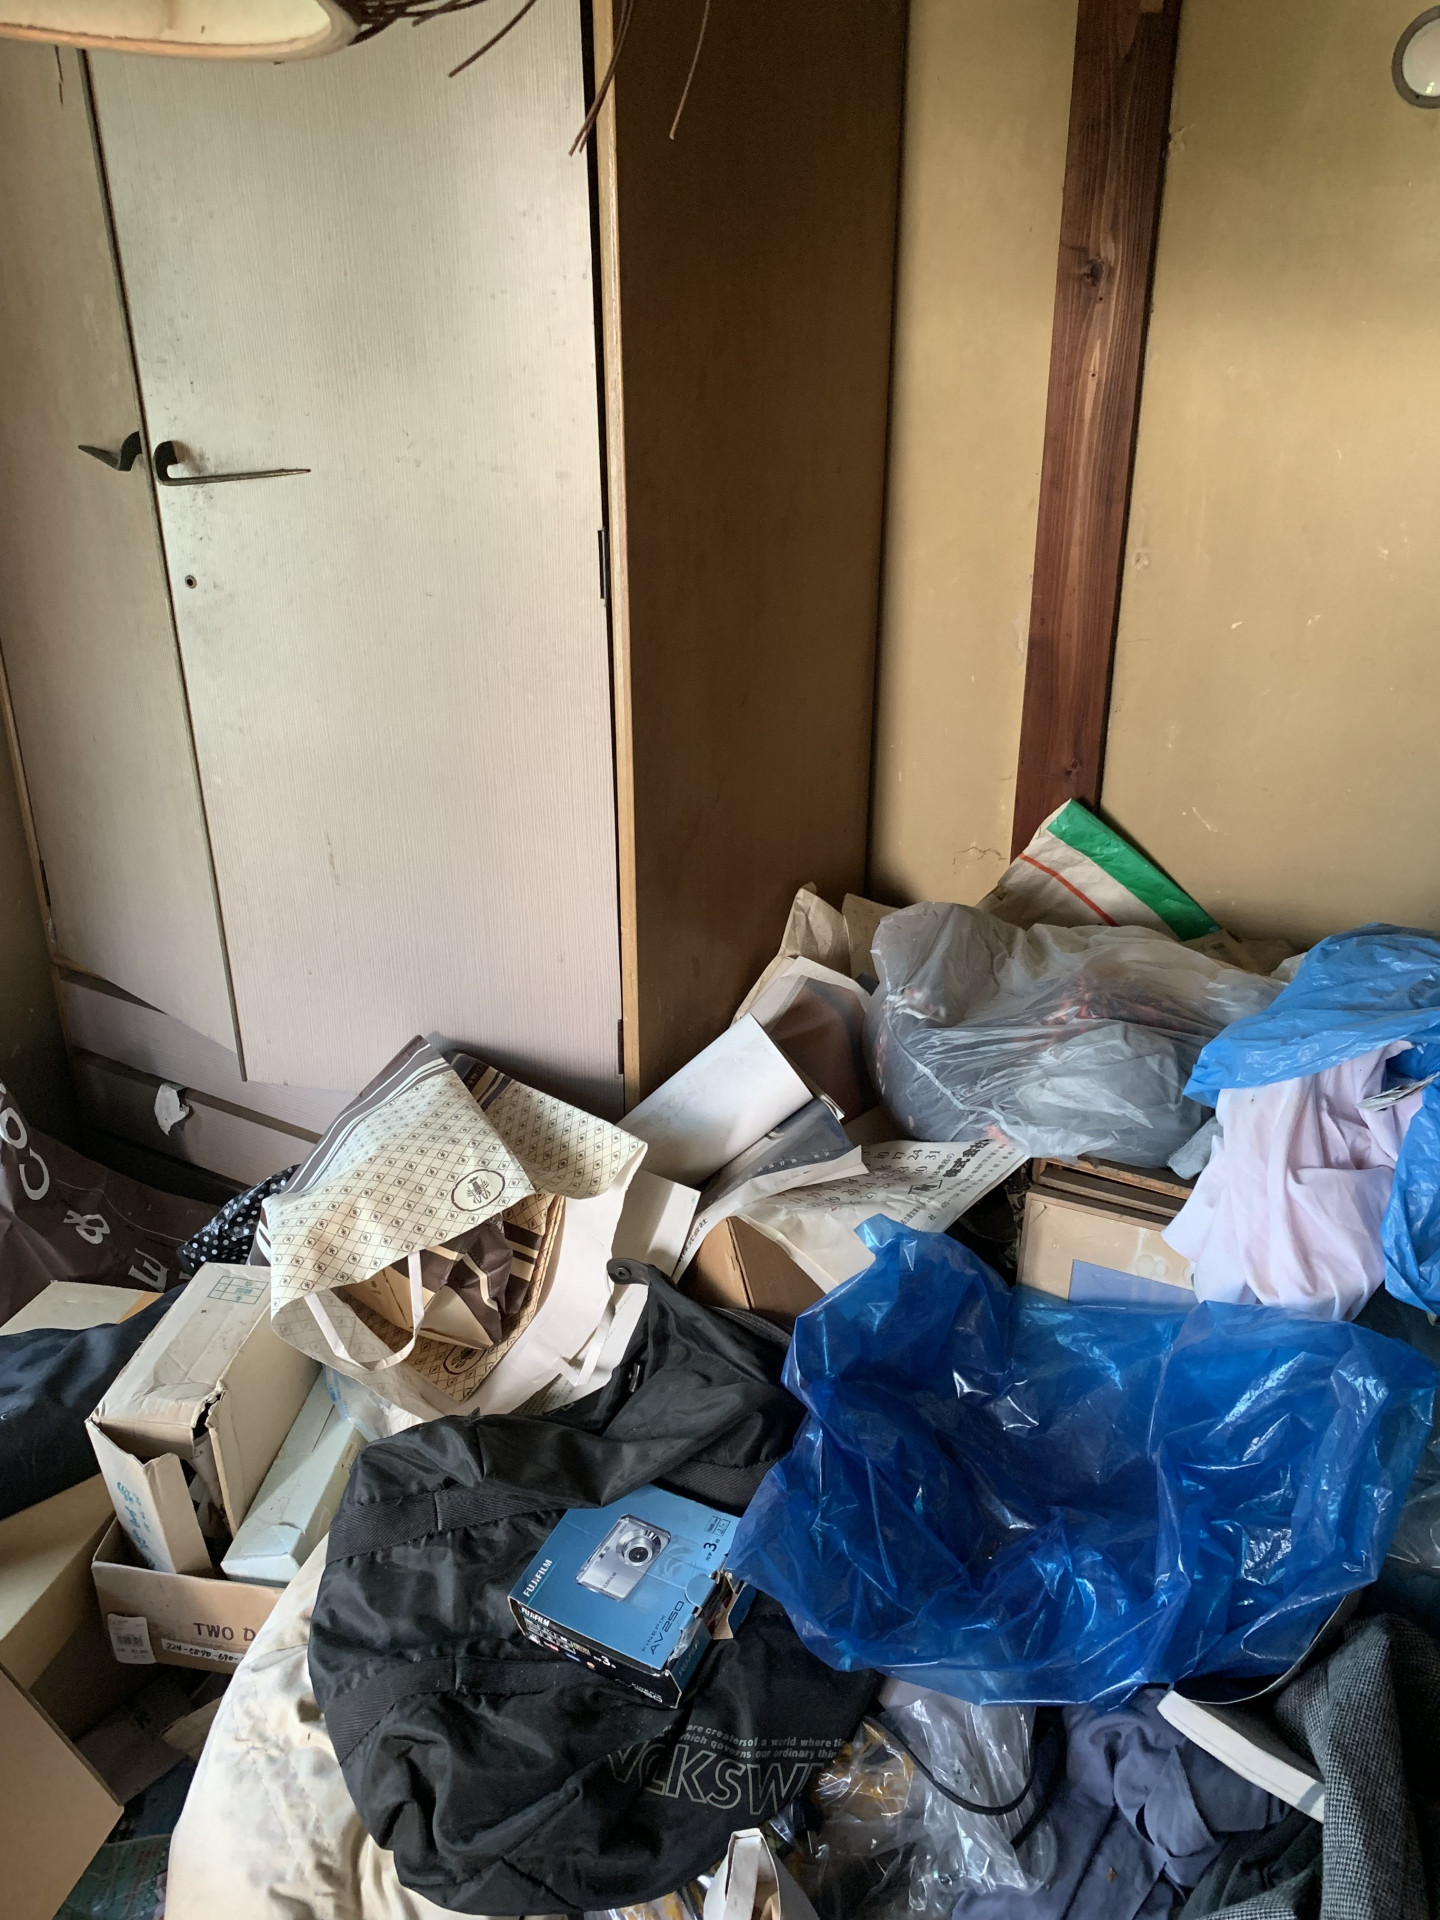 名古屋市で一軒家がゴミ屋敷に分別片付け清掃で、最安値で見積りを作ってとのご依頼